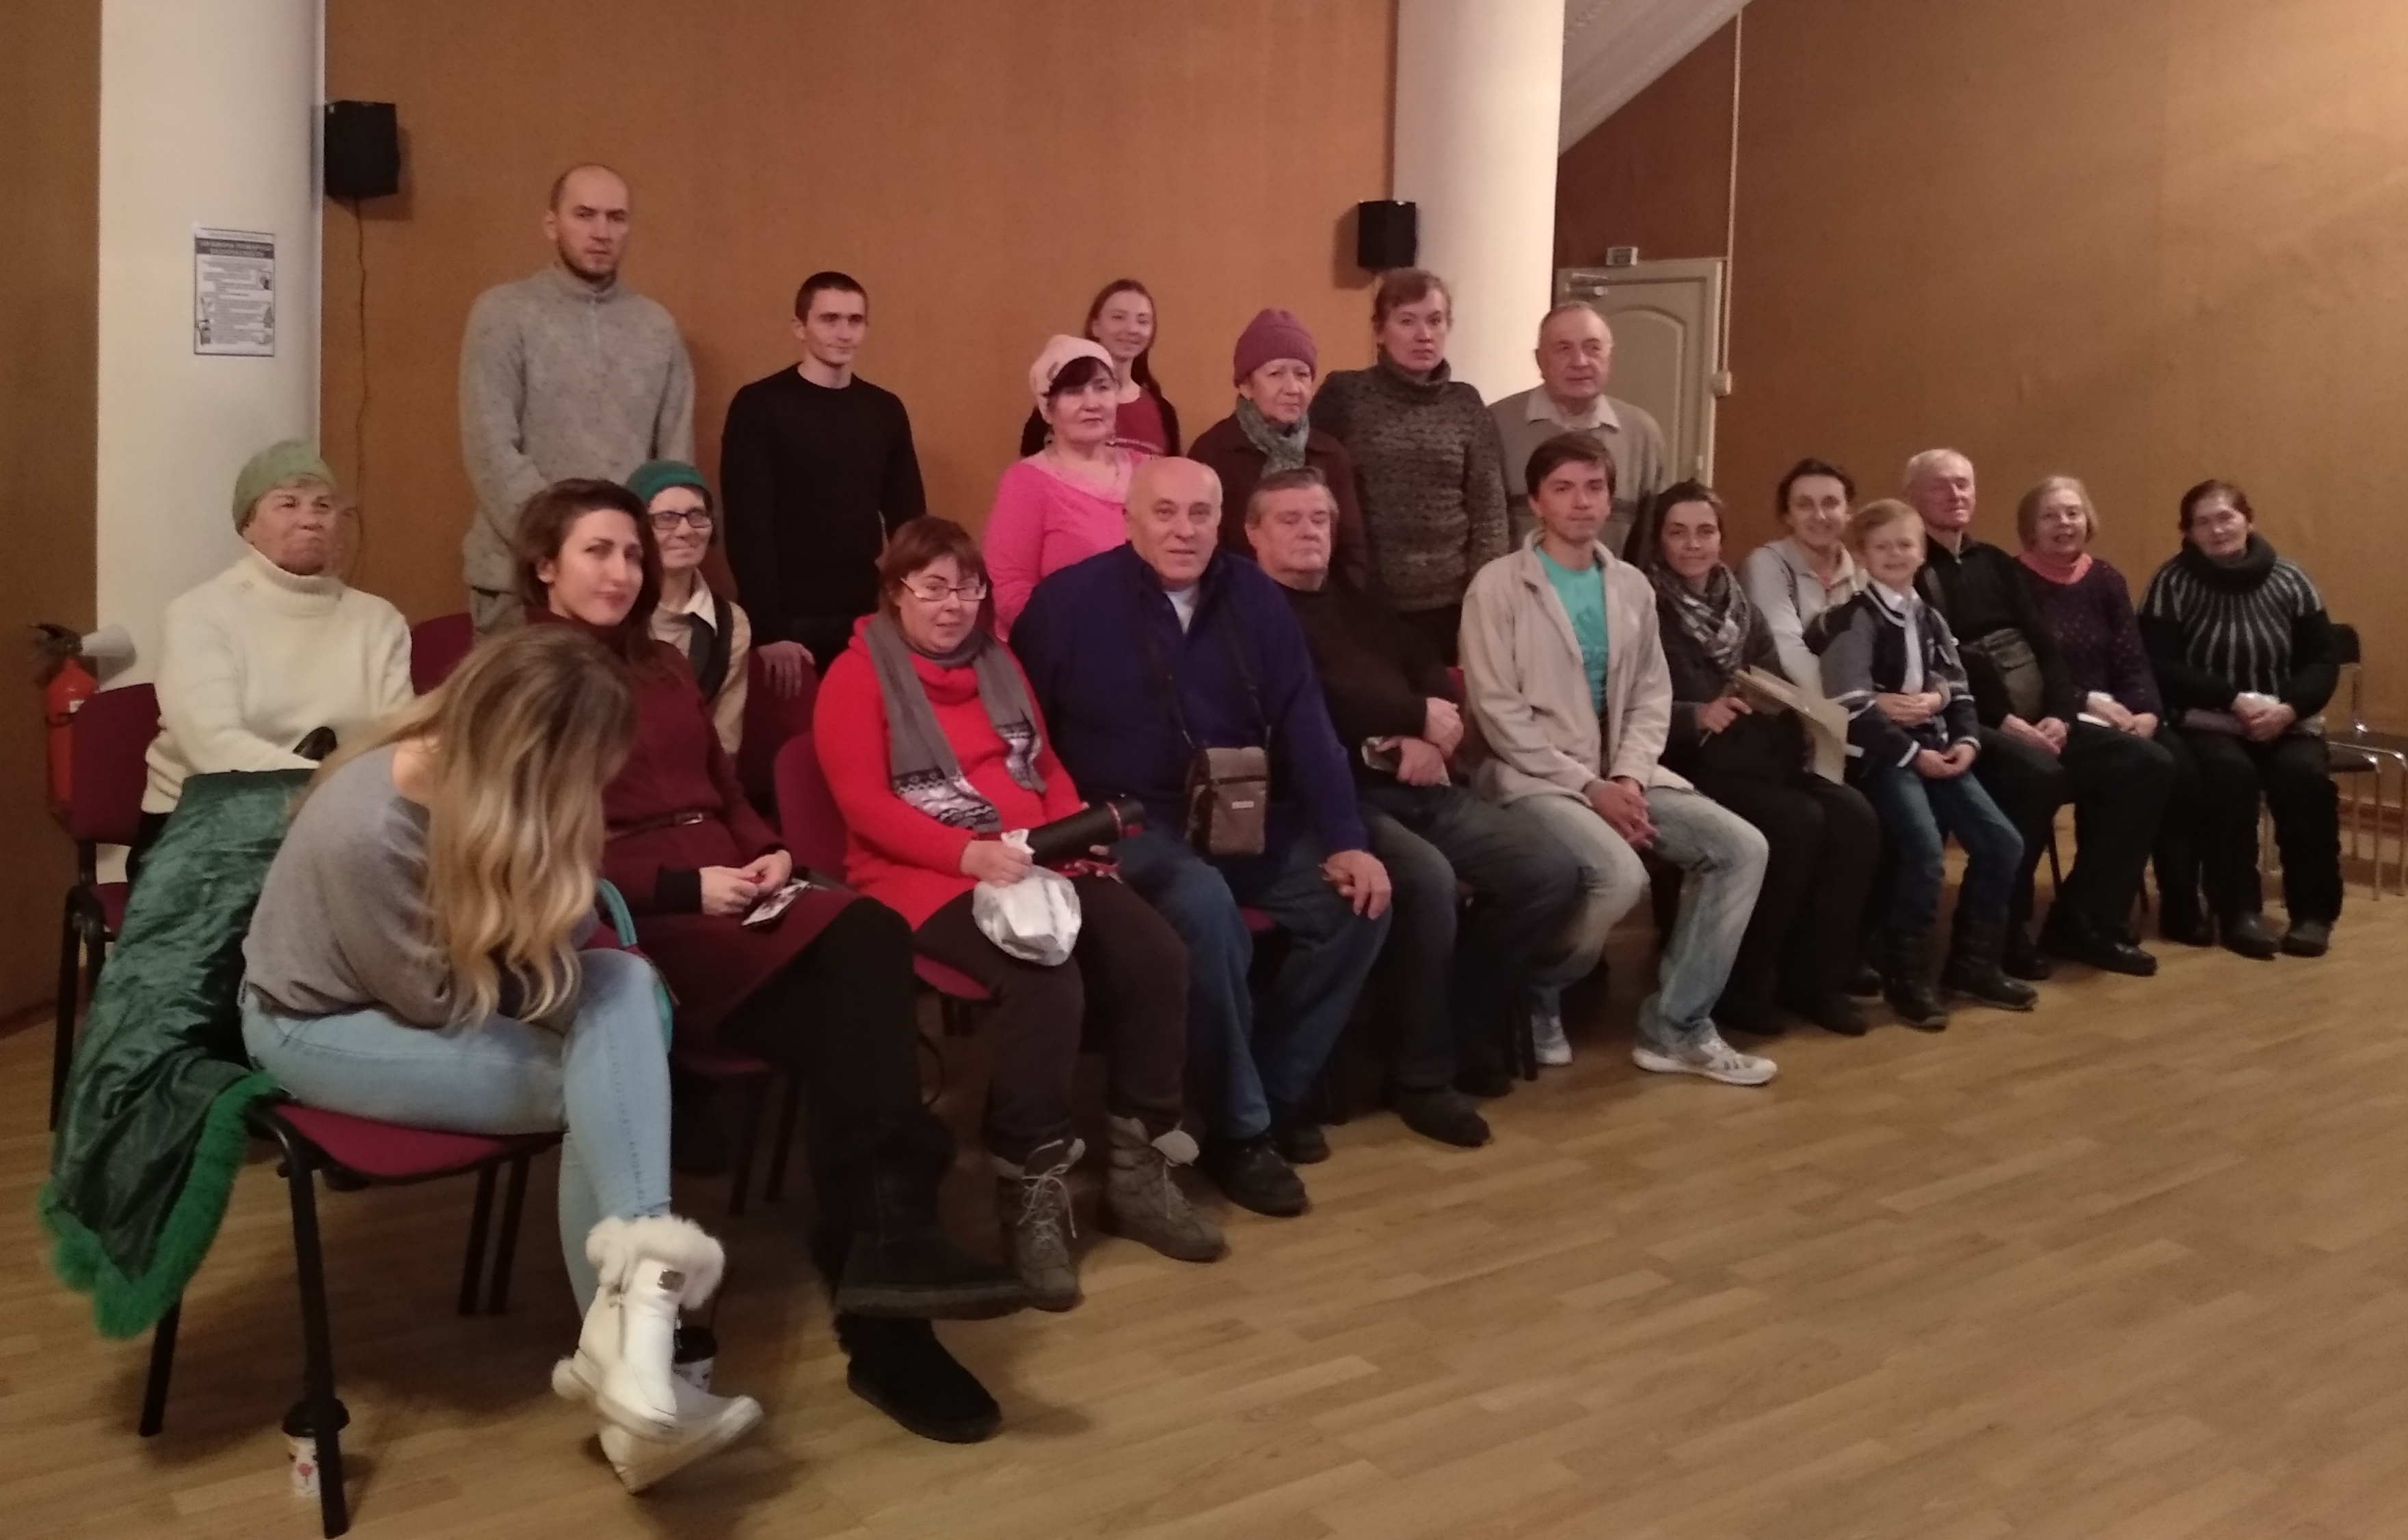 Фото на память о 168-й встрече в Донецком клубе путешественников IMG_20181220_165140_HHT.jpg